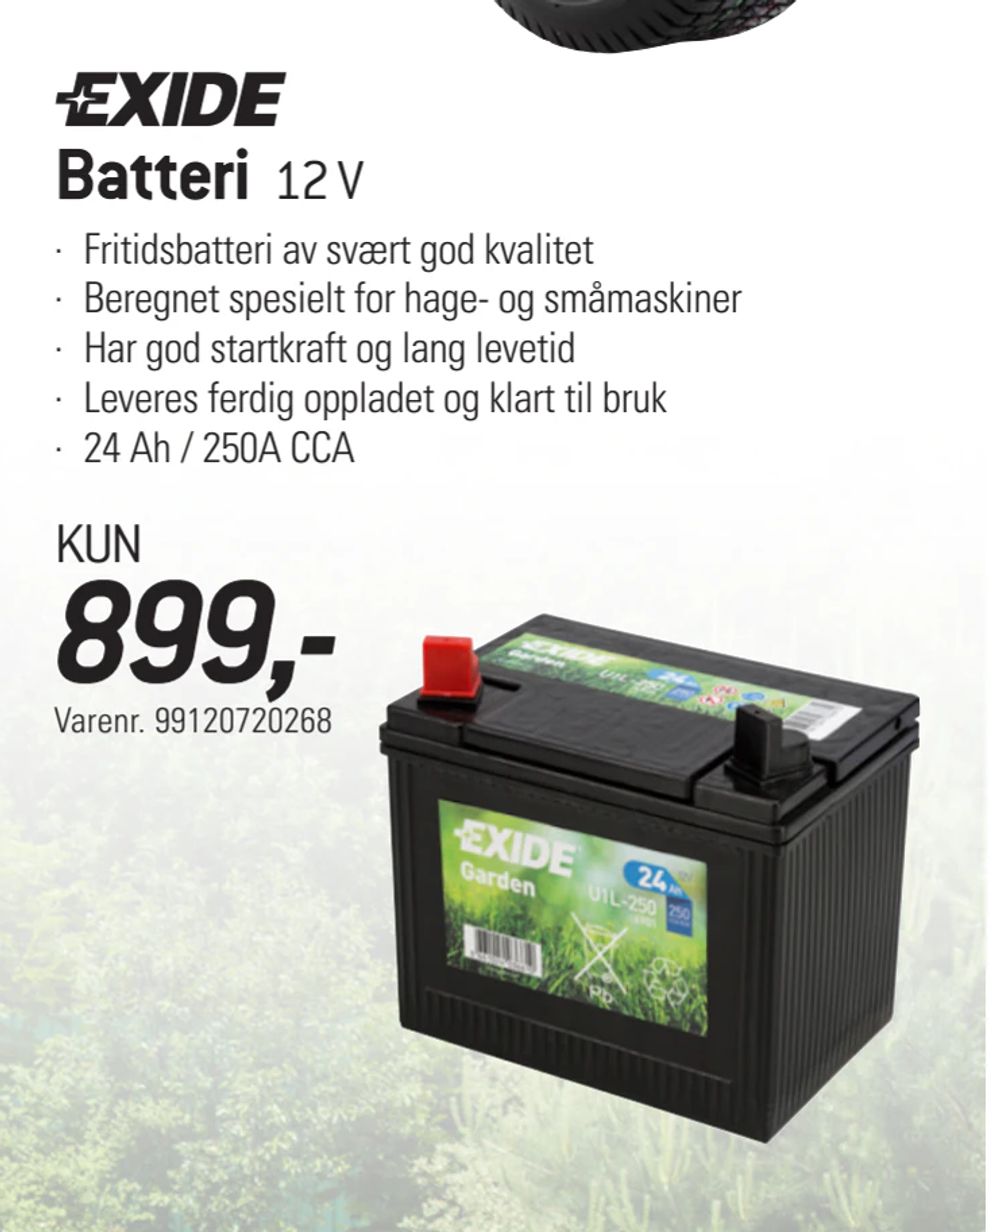 Tilbud på Batteri 12 V fra thansen til 899 kr